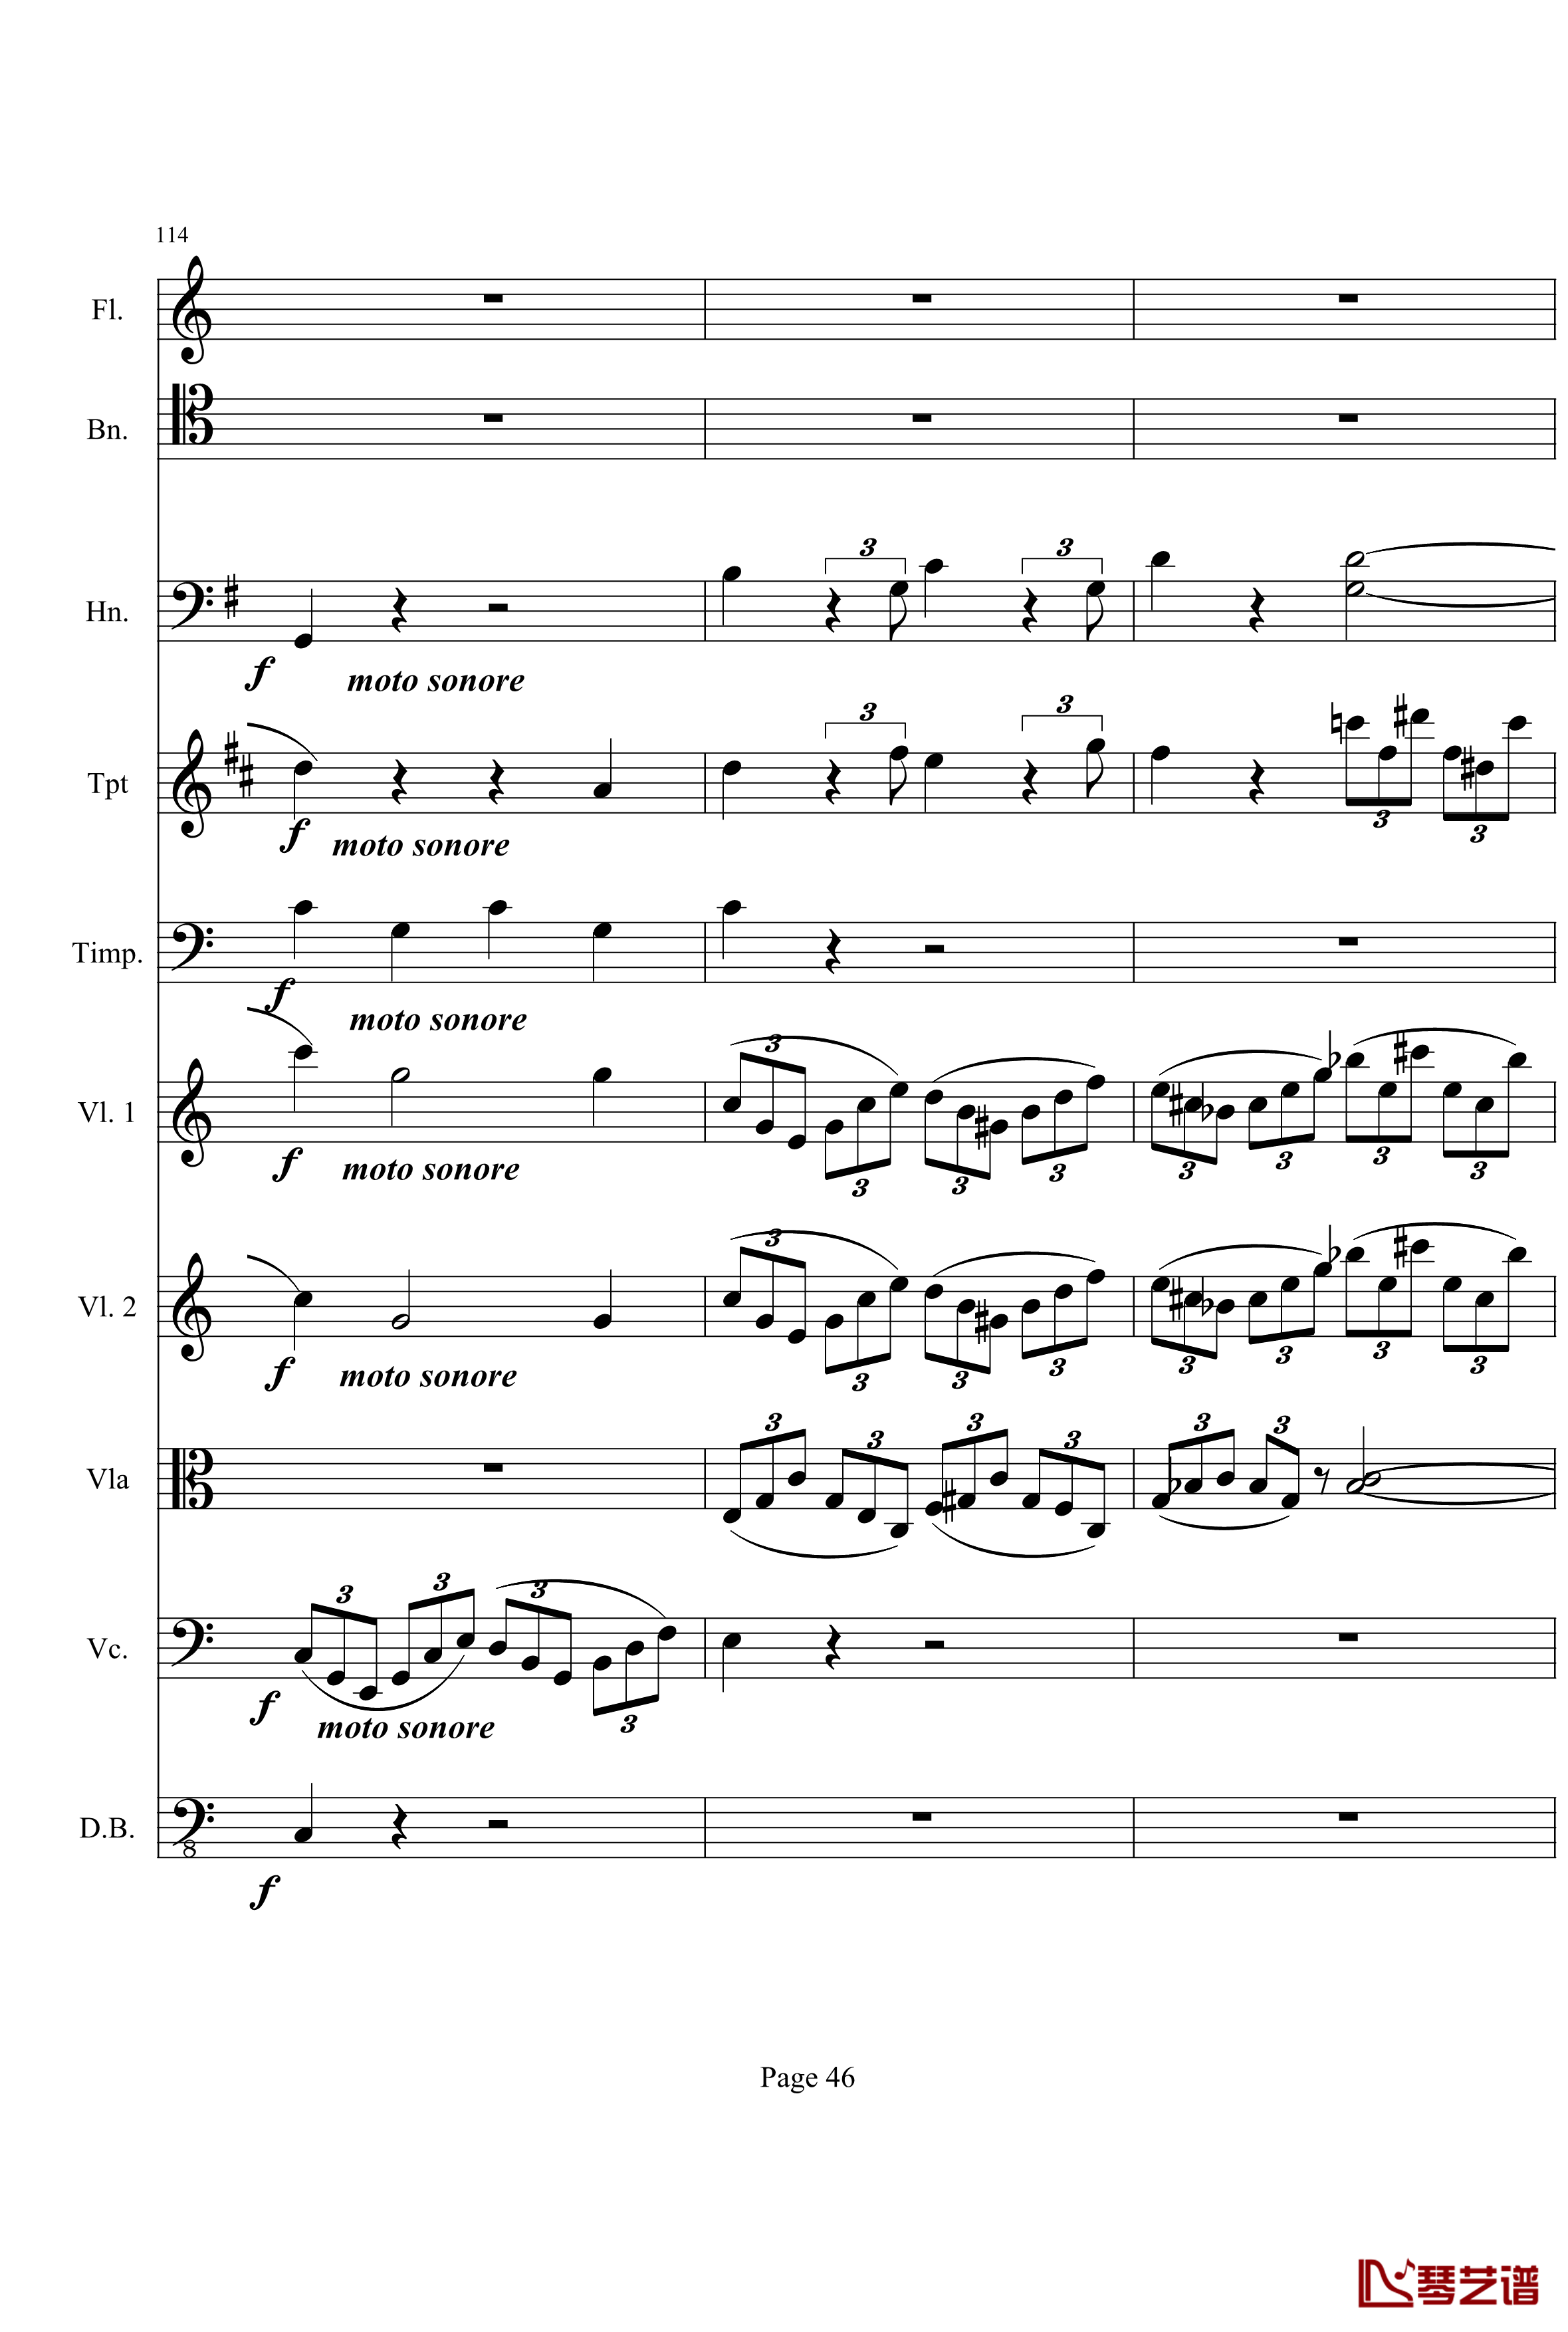 奏鸣曲之交响钢琴谱-第21首-Ⅰ-贝多芬-beethoven46